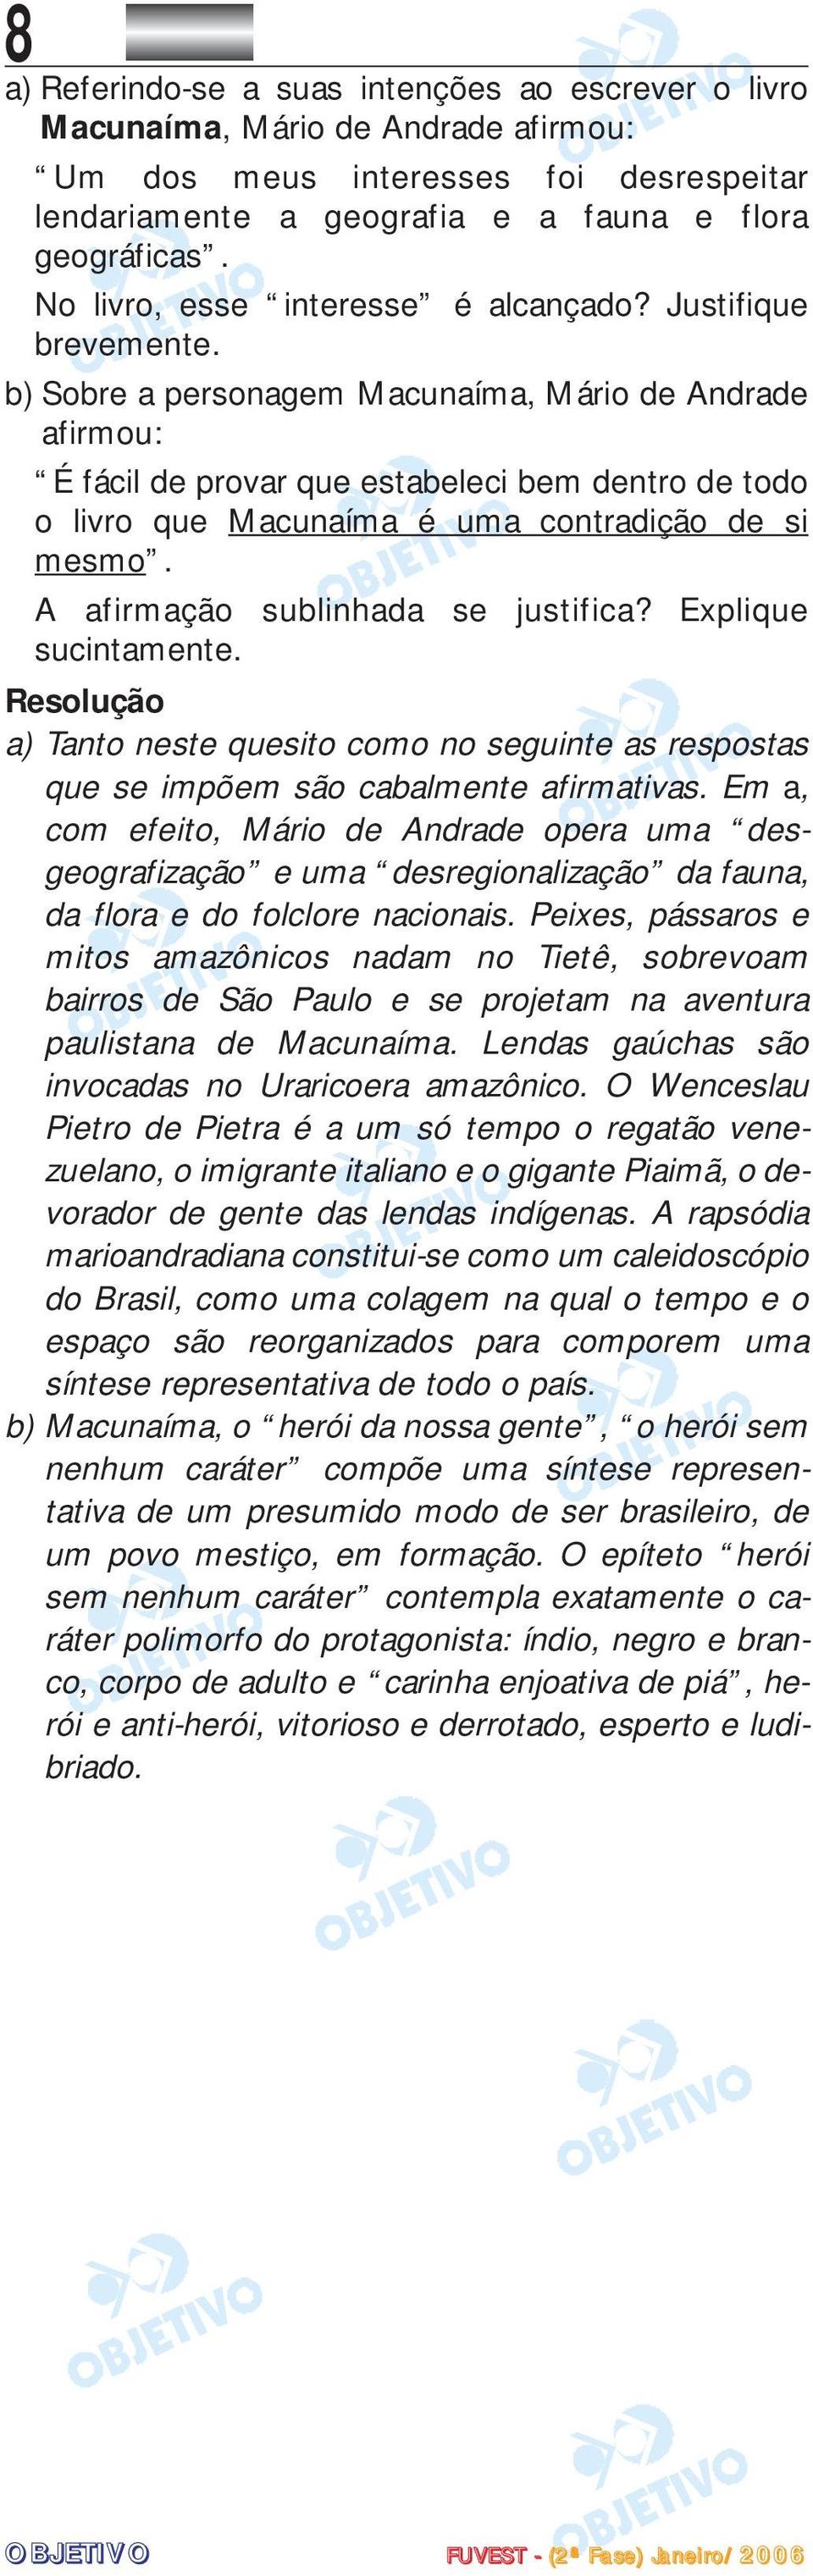 b) Sobre a personagem Macunaíma, Mário de Andrade afirmou: É fácil de provar que estabeleci bem dentro de todo o livro que Macunaíma é uma contradição de si mesmo. A afirmação sublinhada se justifica?